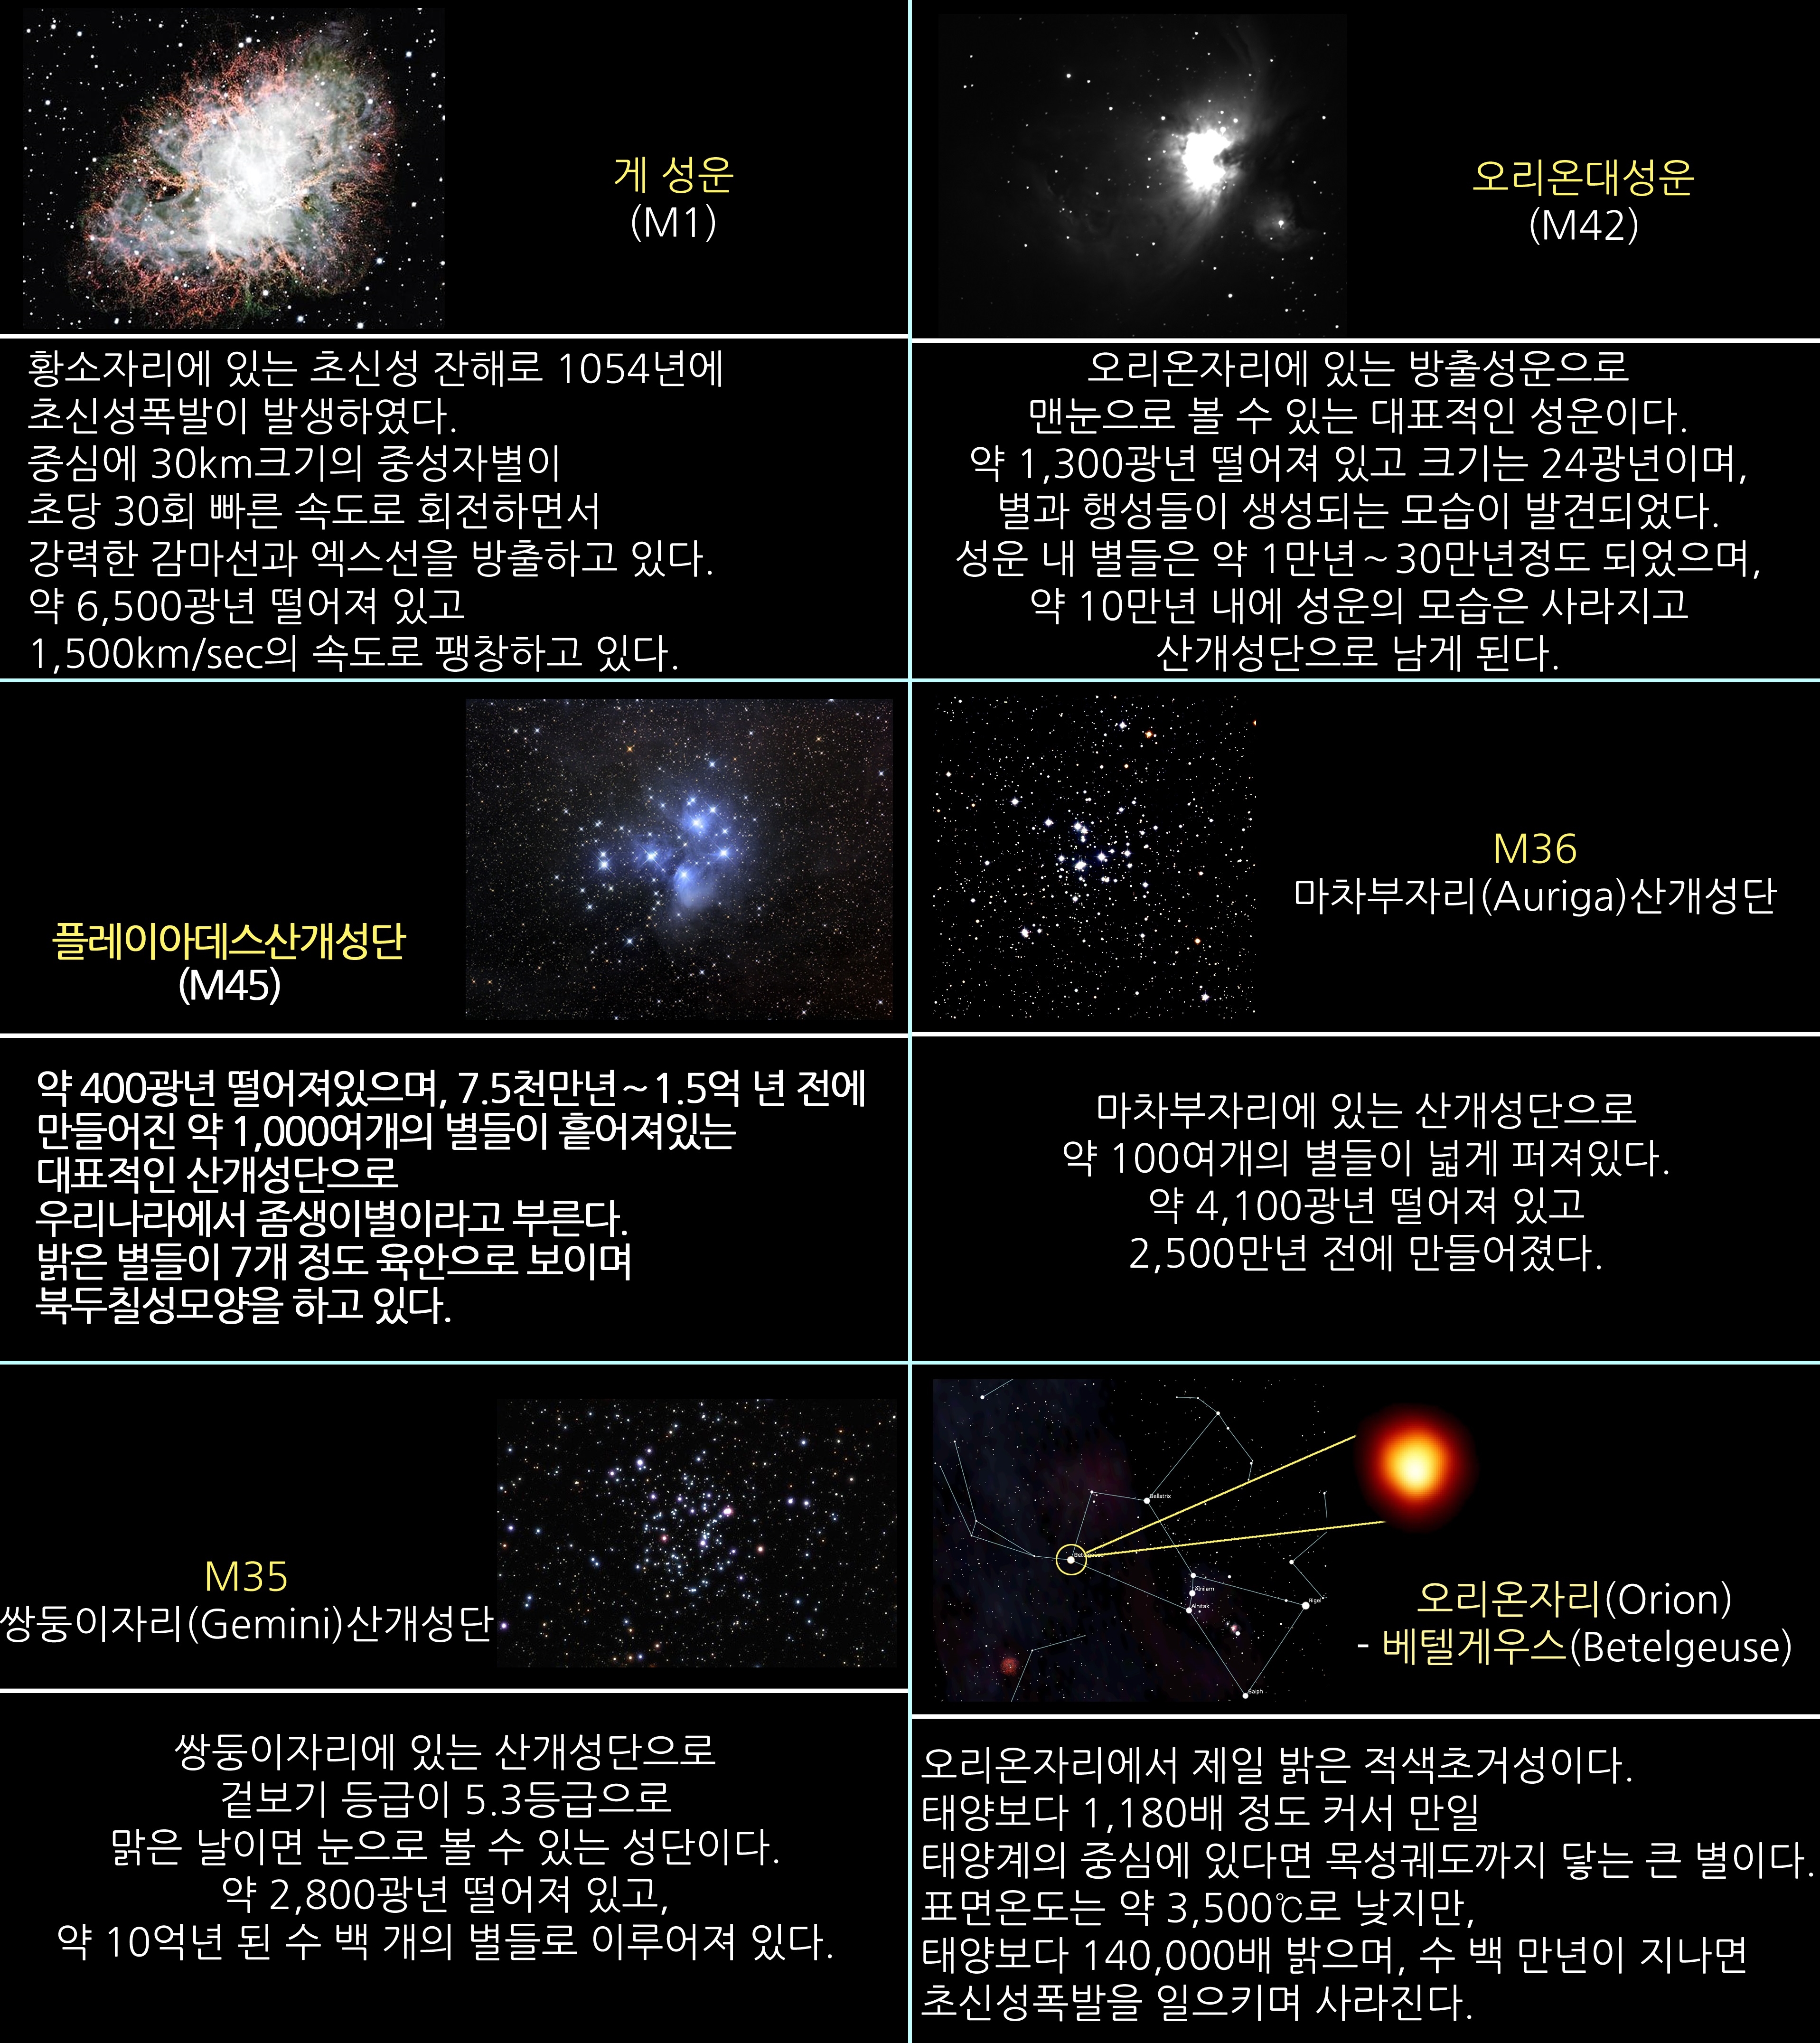 2017년 1월 주요 천체관측 대상 및 별자리